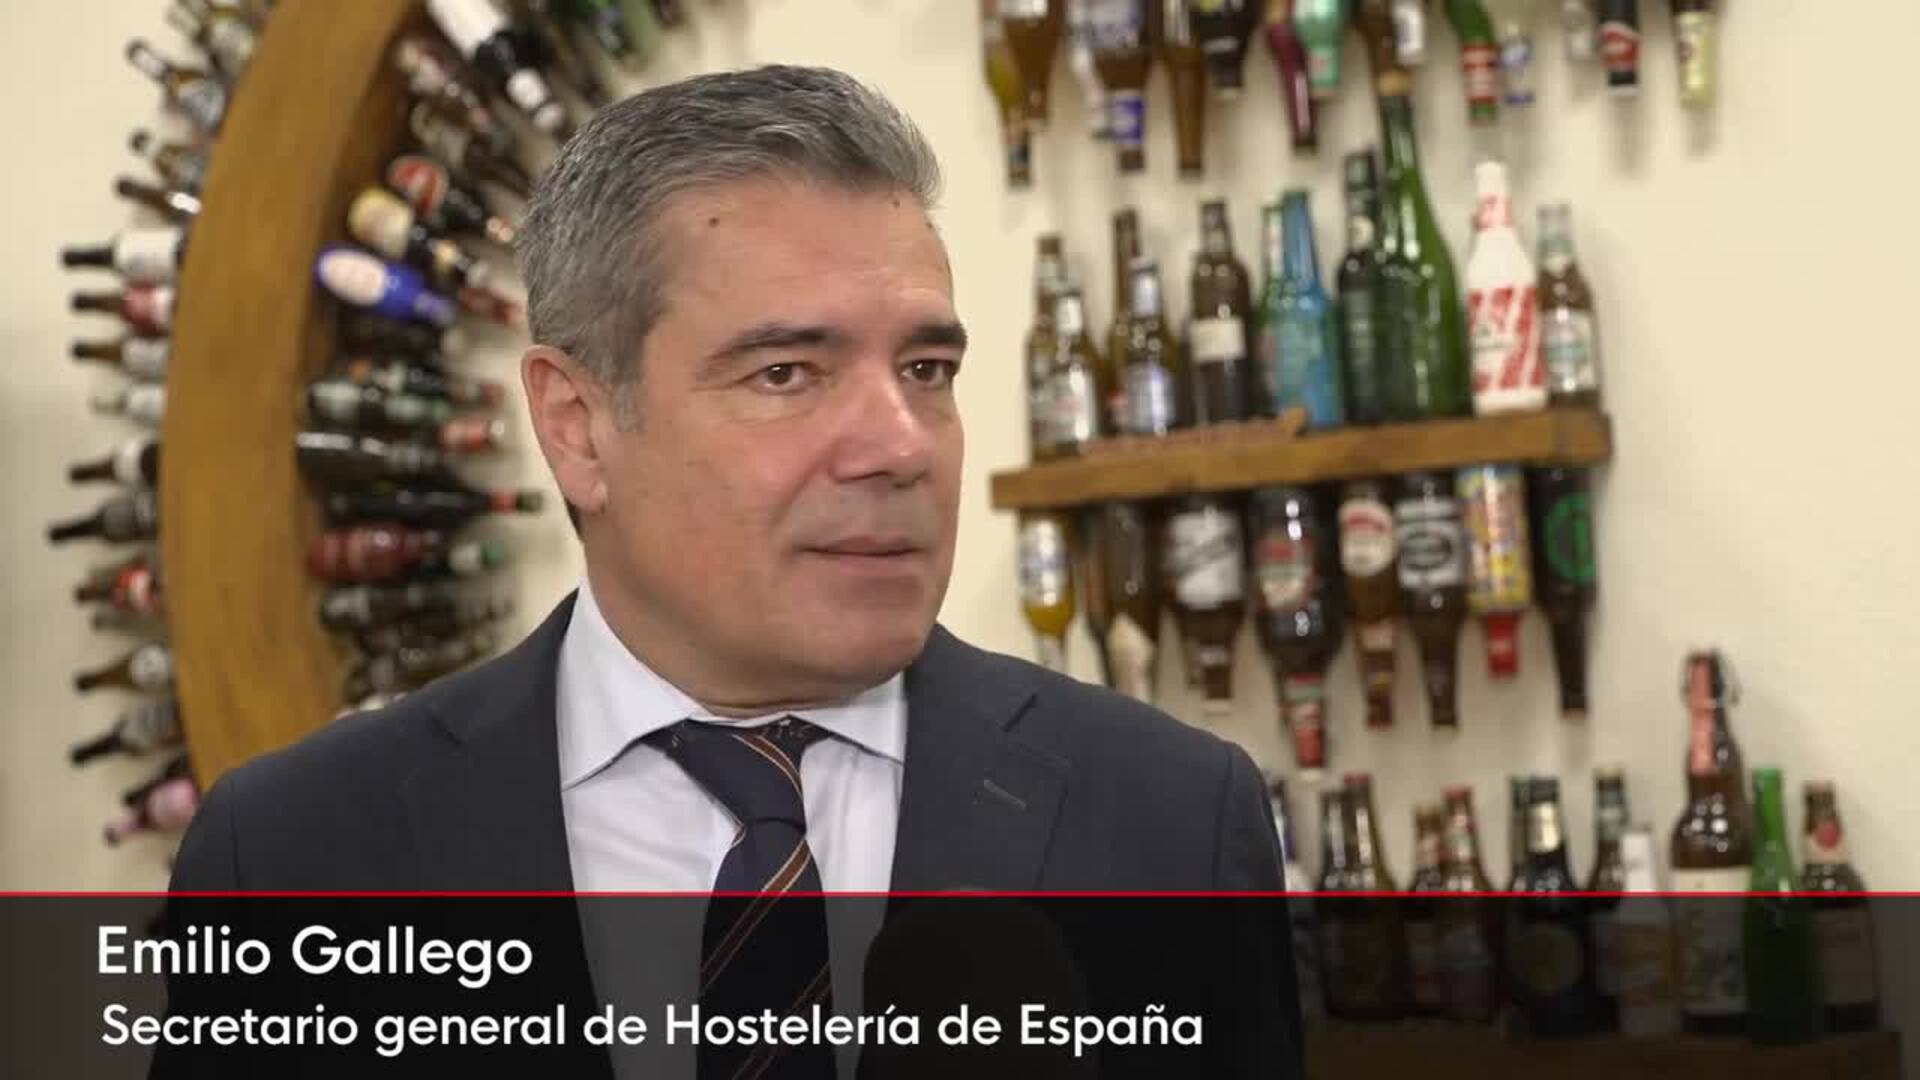 Caen las ventas del sector cervecero español un 0,7% con respecto al año anterior